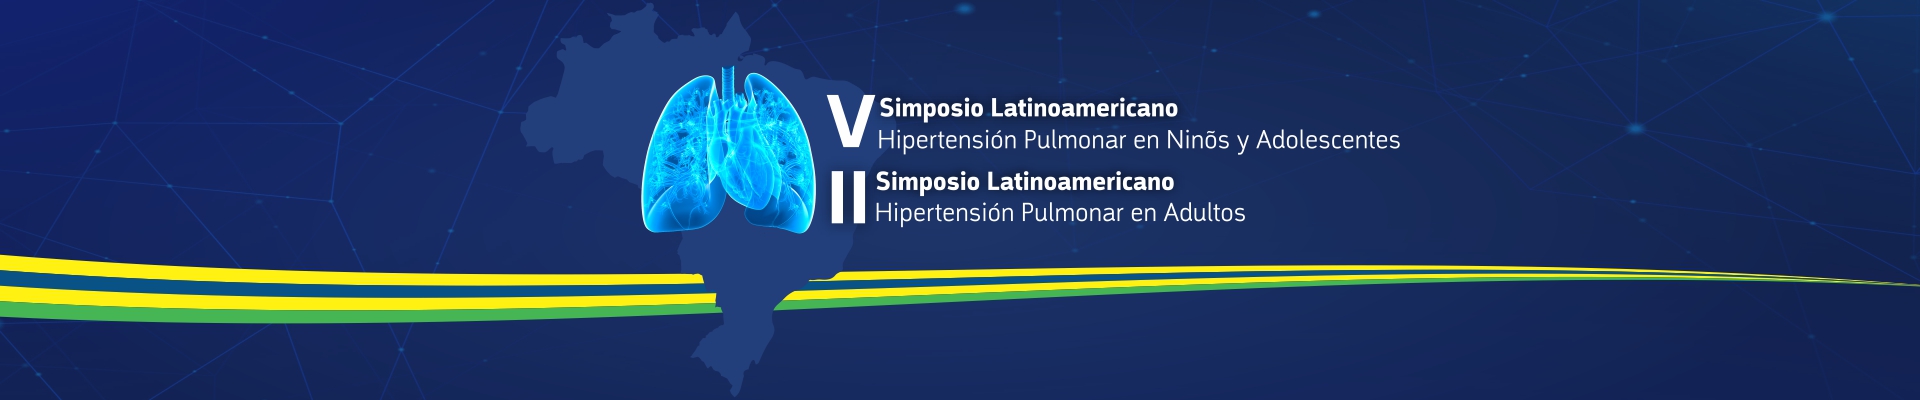 V Simposio Latinoamericano Hipertension Pulmonar en Ninos y adolescentes / II Simposio Latinoamericano Hipertension Pulmonar en Adultos